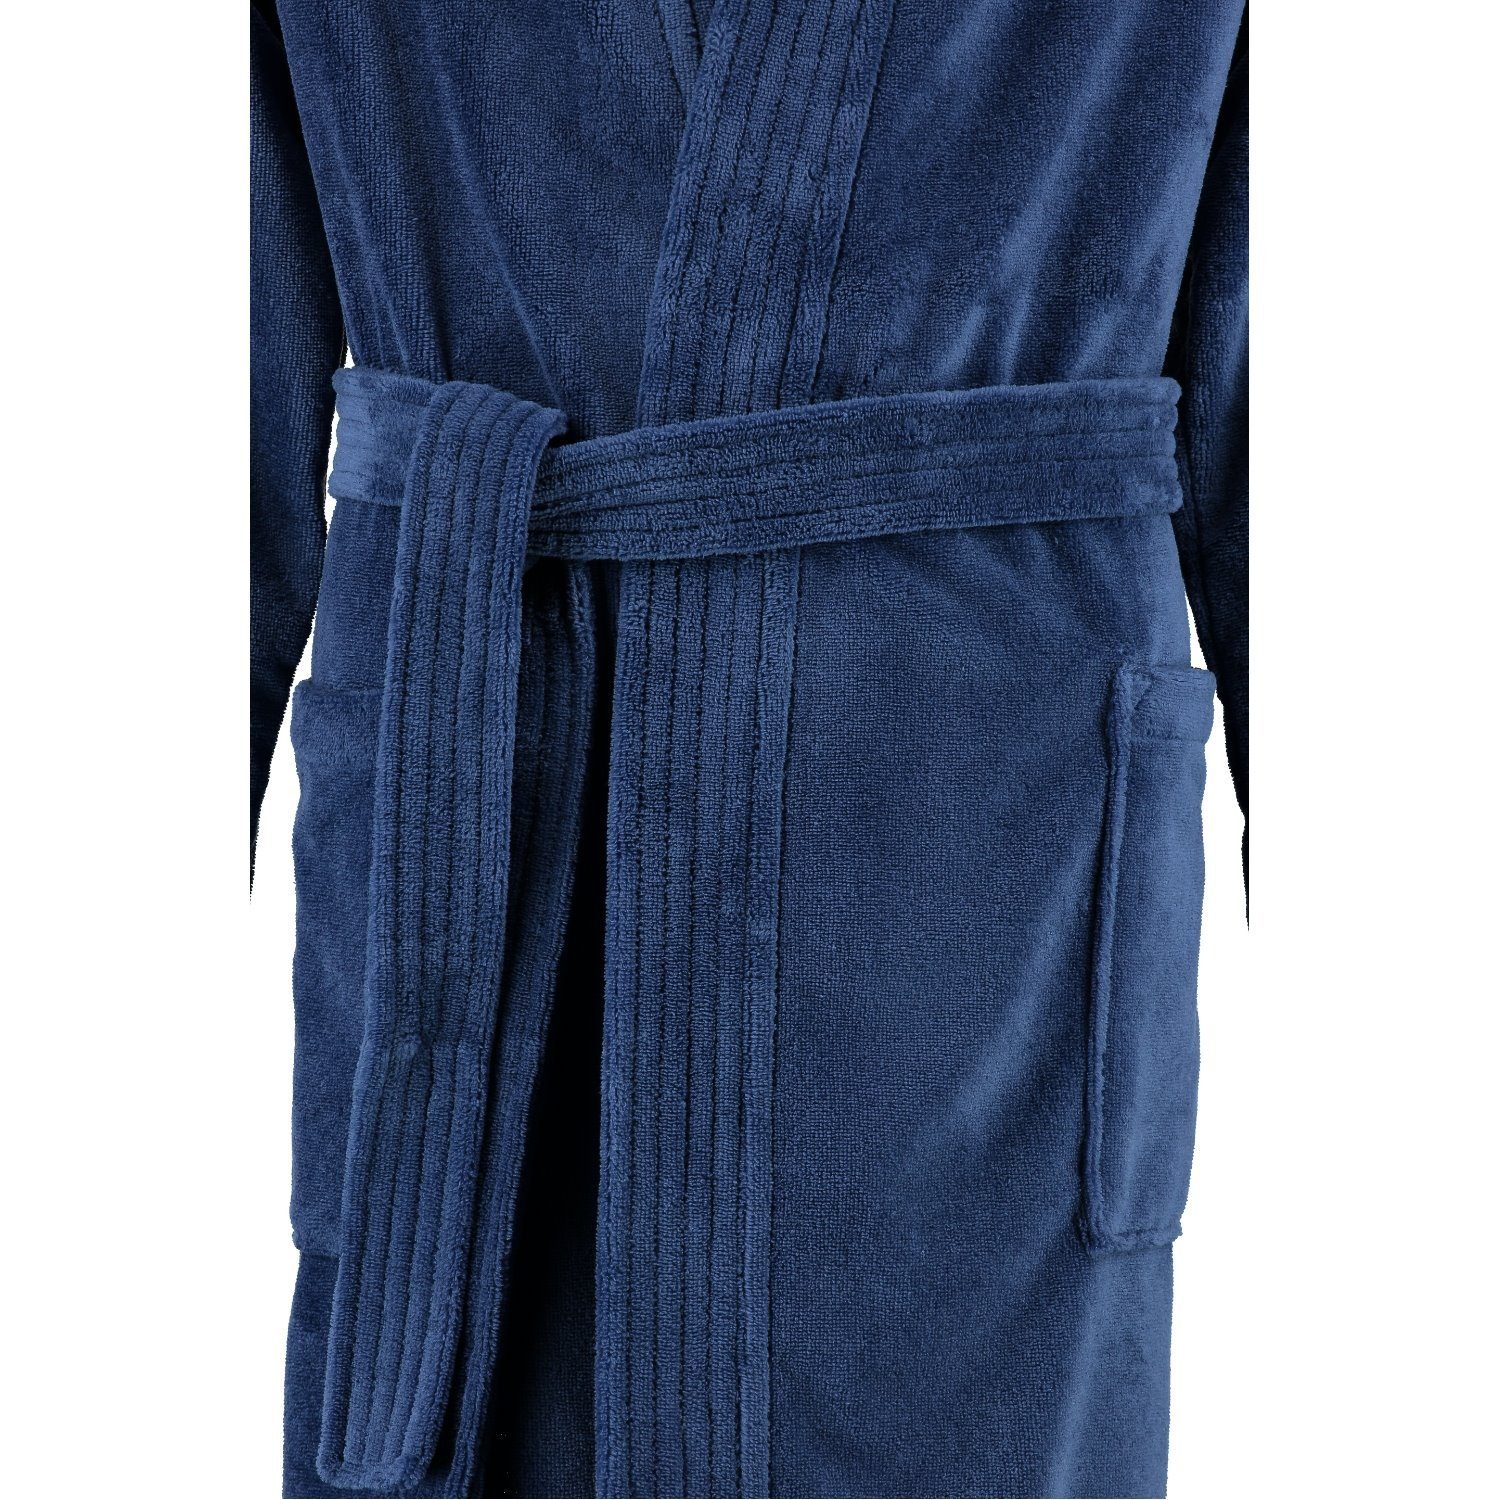 Cawö Home Cawö Herrenbademantel Gürtel, nachtblau Velours Baumwollmischung, Kimono-Kragen, Herren Qualität Kimonoform, Bademantel